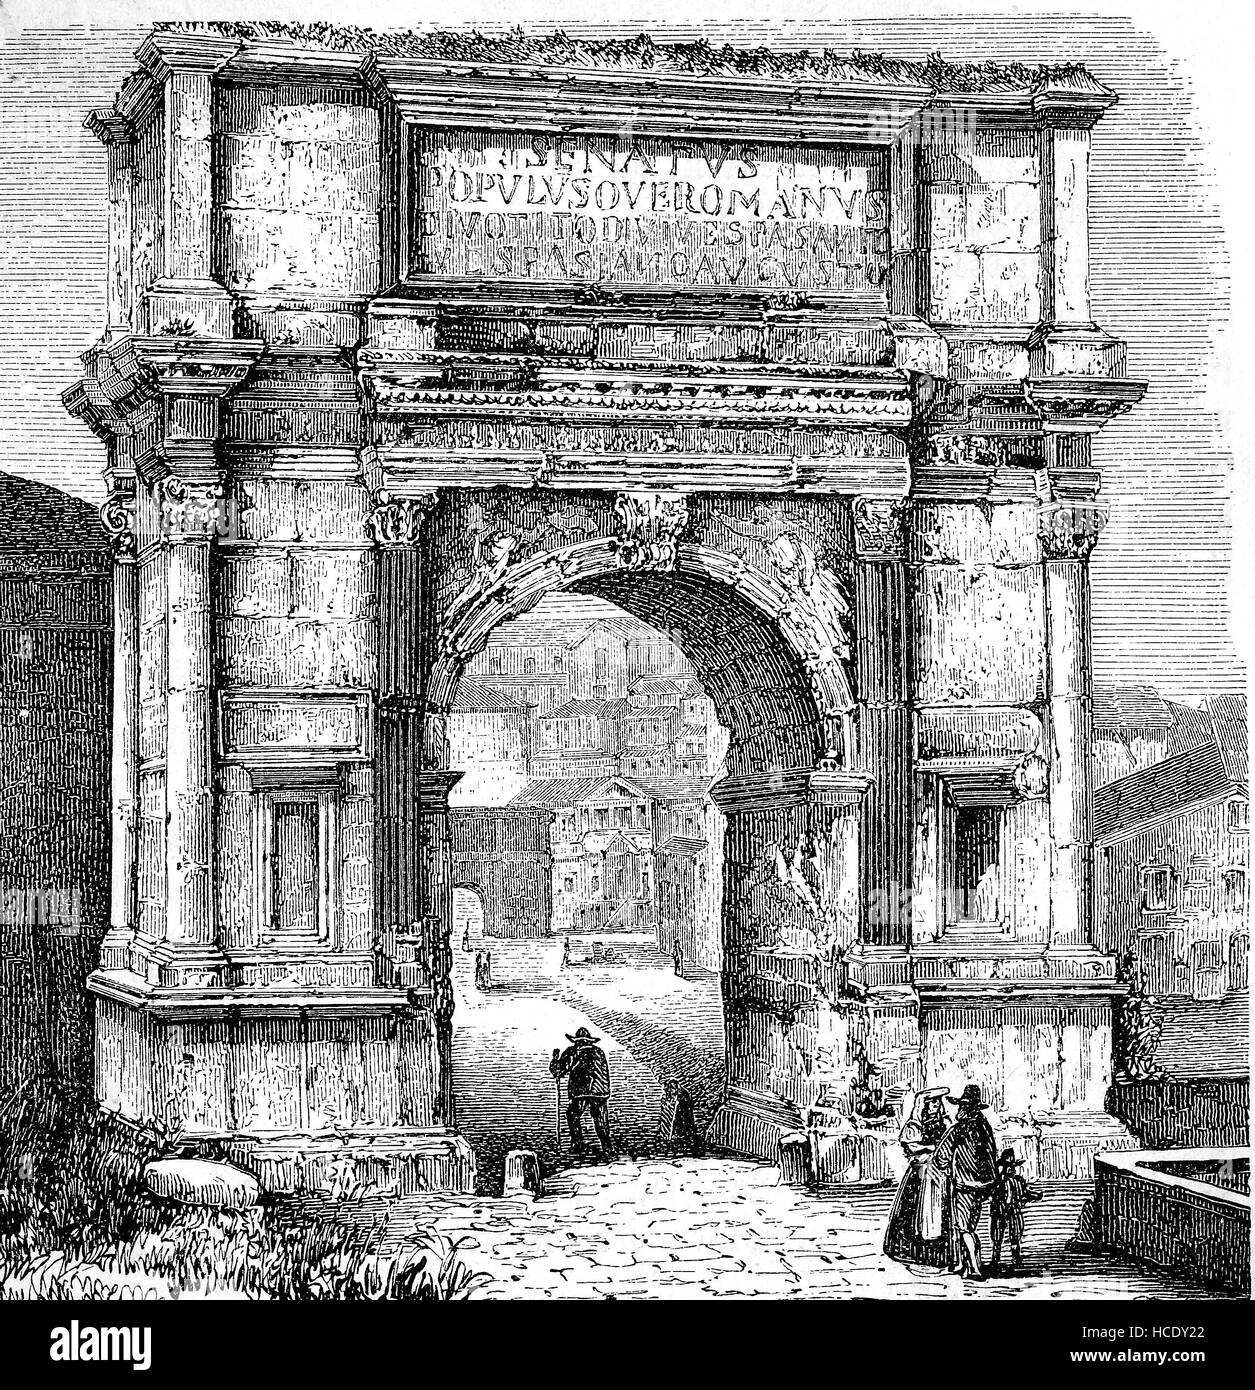 El Arco de Tito, Arco di Tito, 1ª siglo A.D. arco honorífico, situado en la Via Sacra, en Roma, Italia, la historia de la Roma antigua, el imperio romano Foto de stock